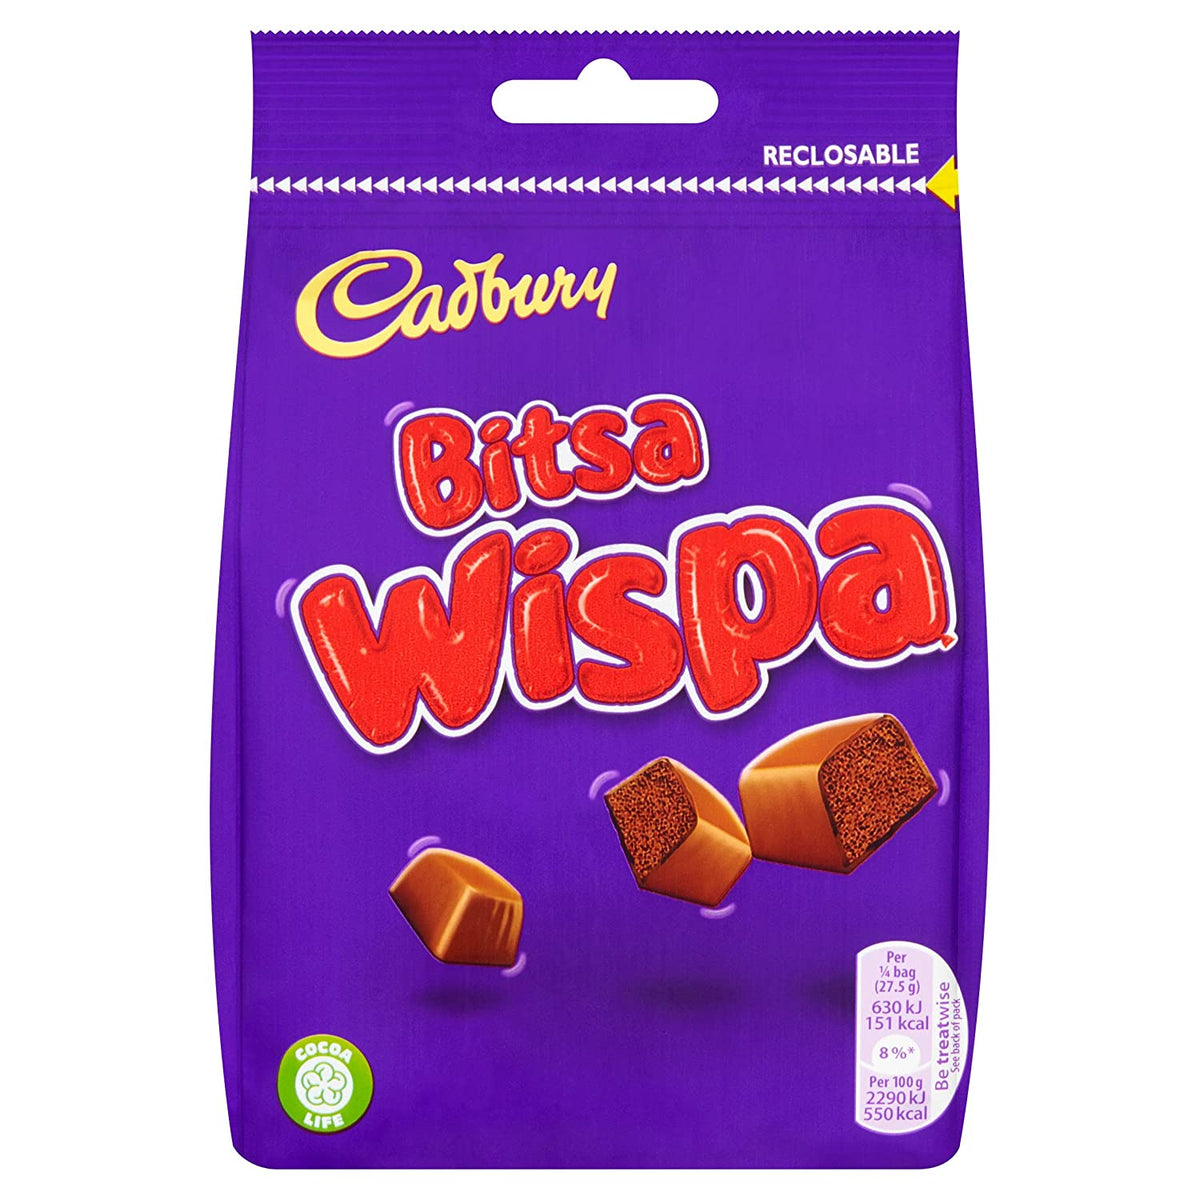 Cadbury Wispa Bites Bag 95g x 10